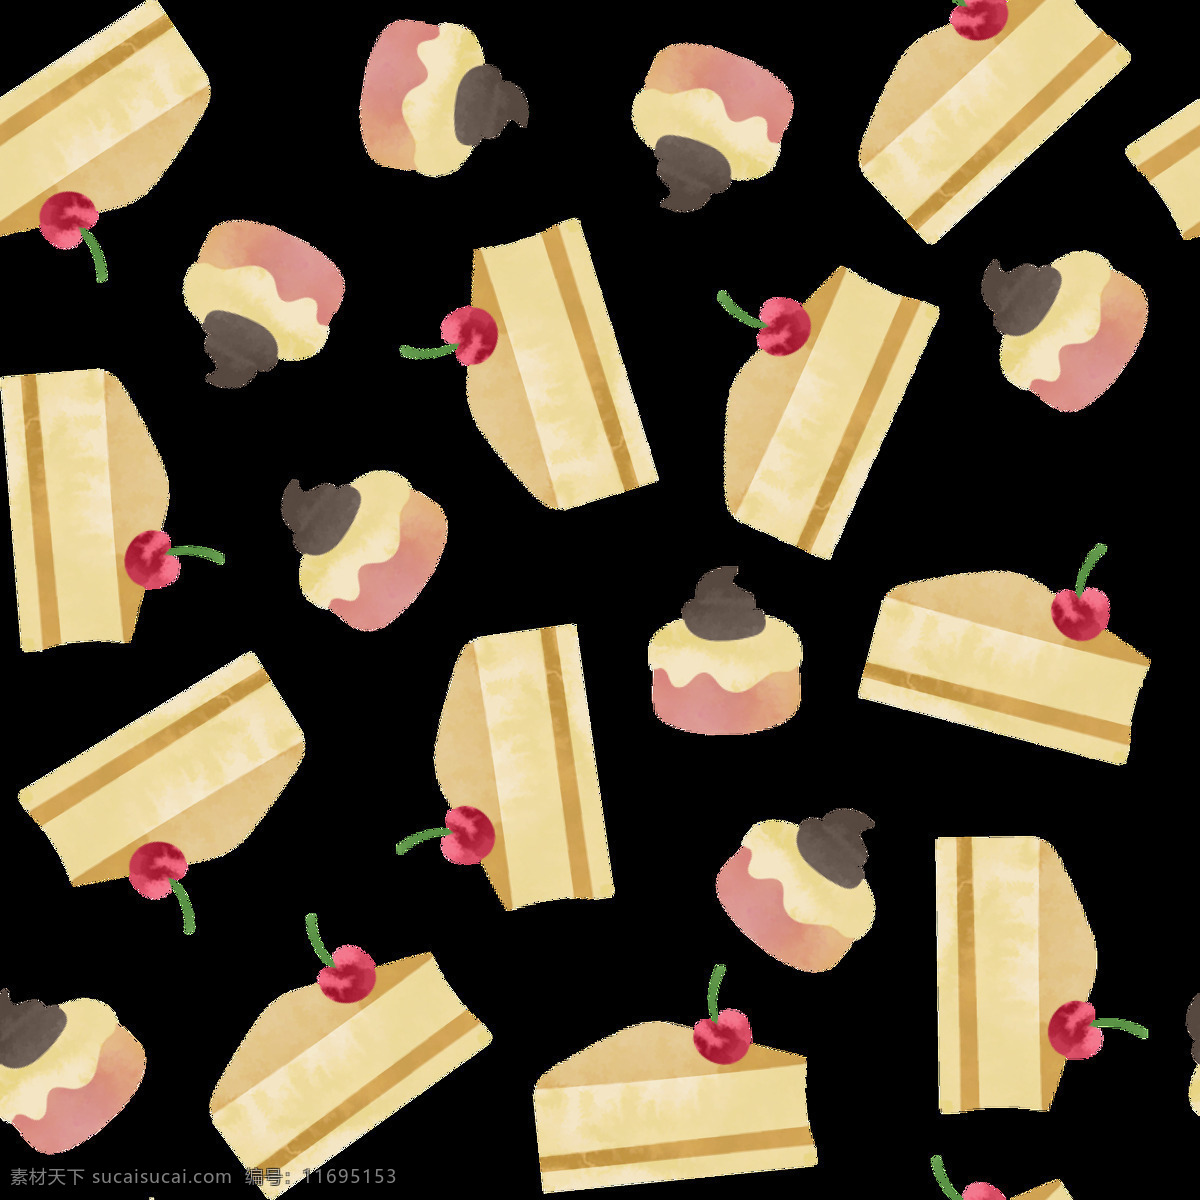 黄色 蛋糕 卡通 背景 背景素材 奶油 平面素材 设计素材 水果